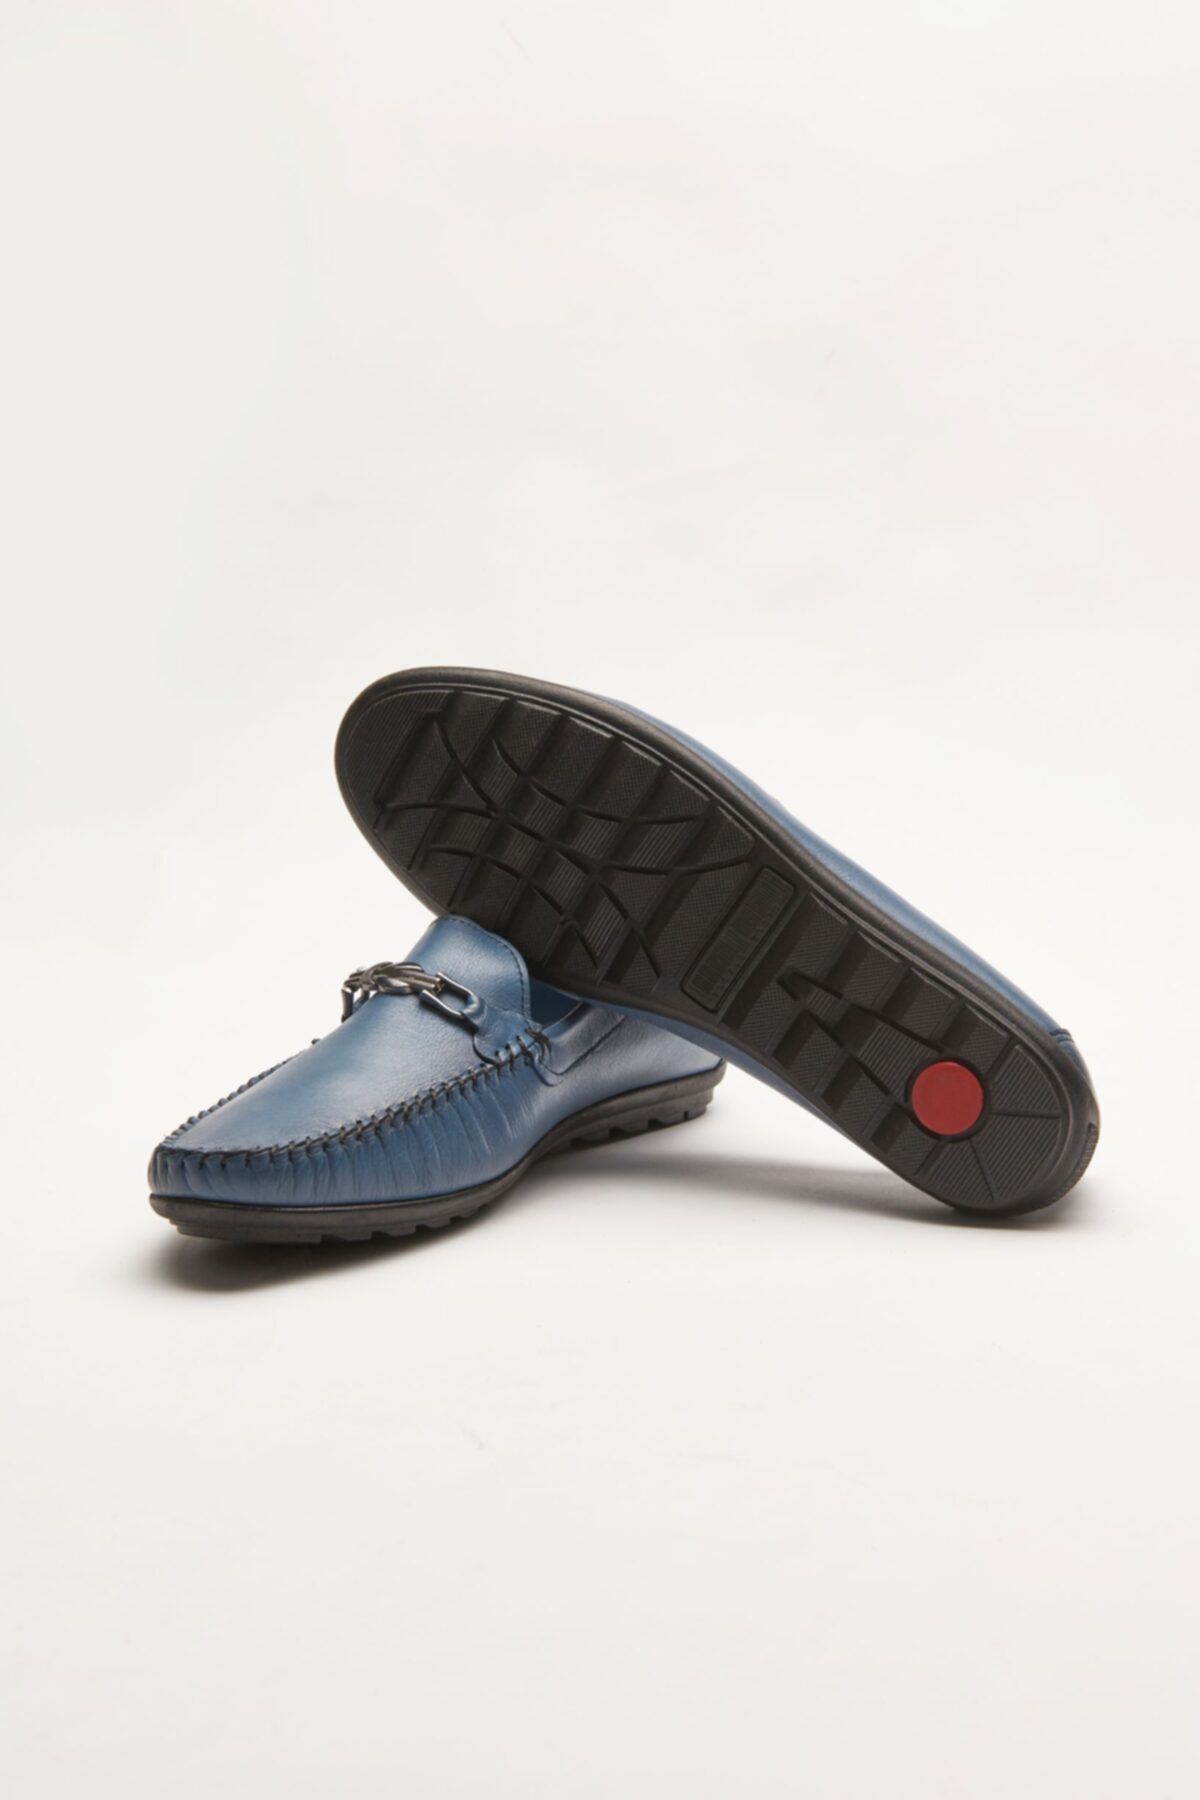 polo deri Hakiki Deri Loafer Mavi Yazlık Erkek Ayakkabı